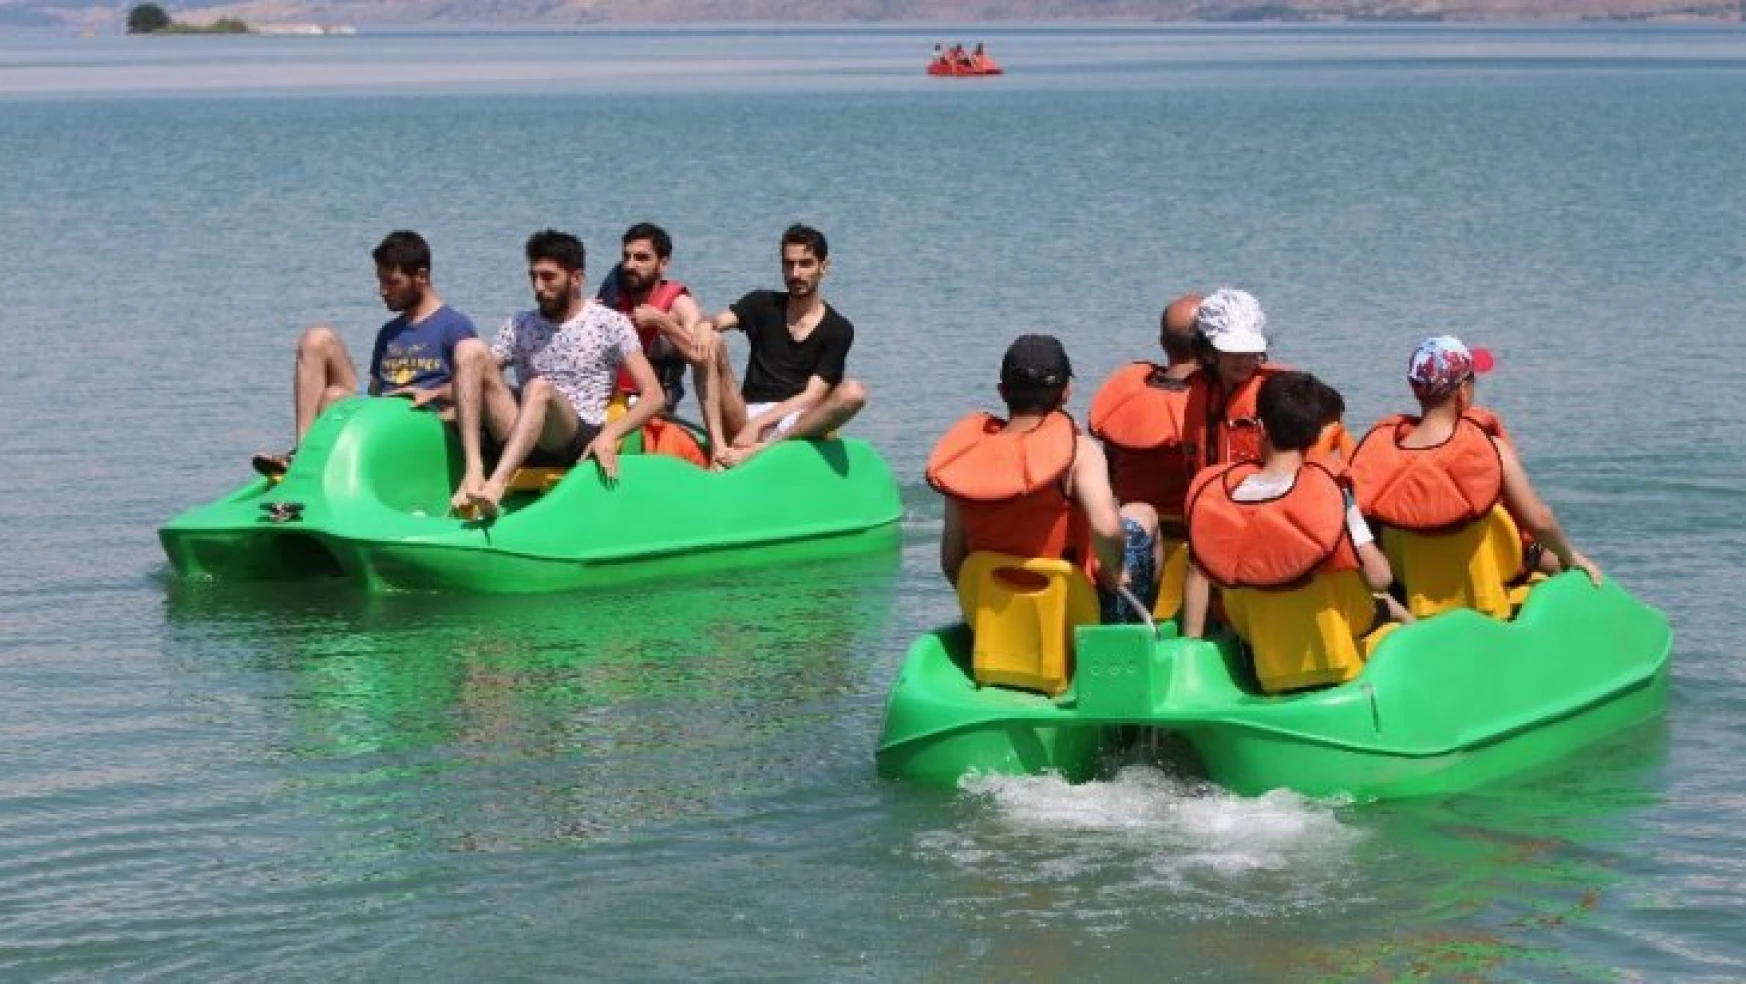 Elazığ Hazar Gölü Plajları Antalya'yı Aratmıyor